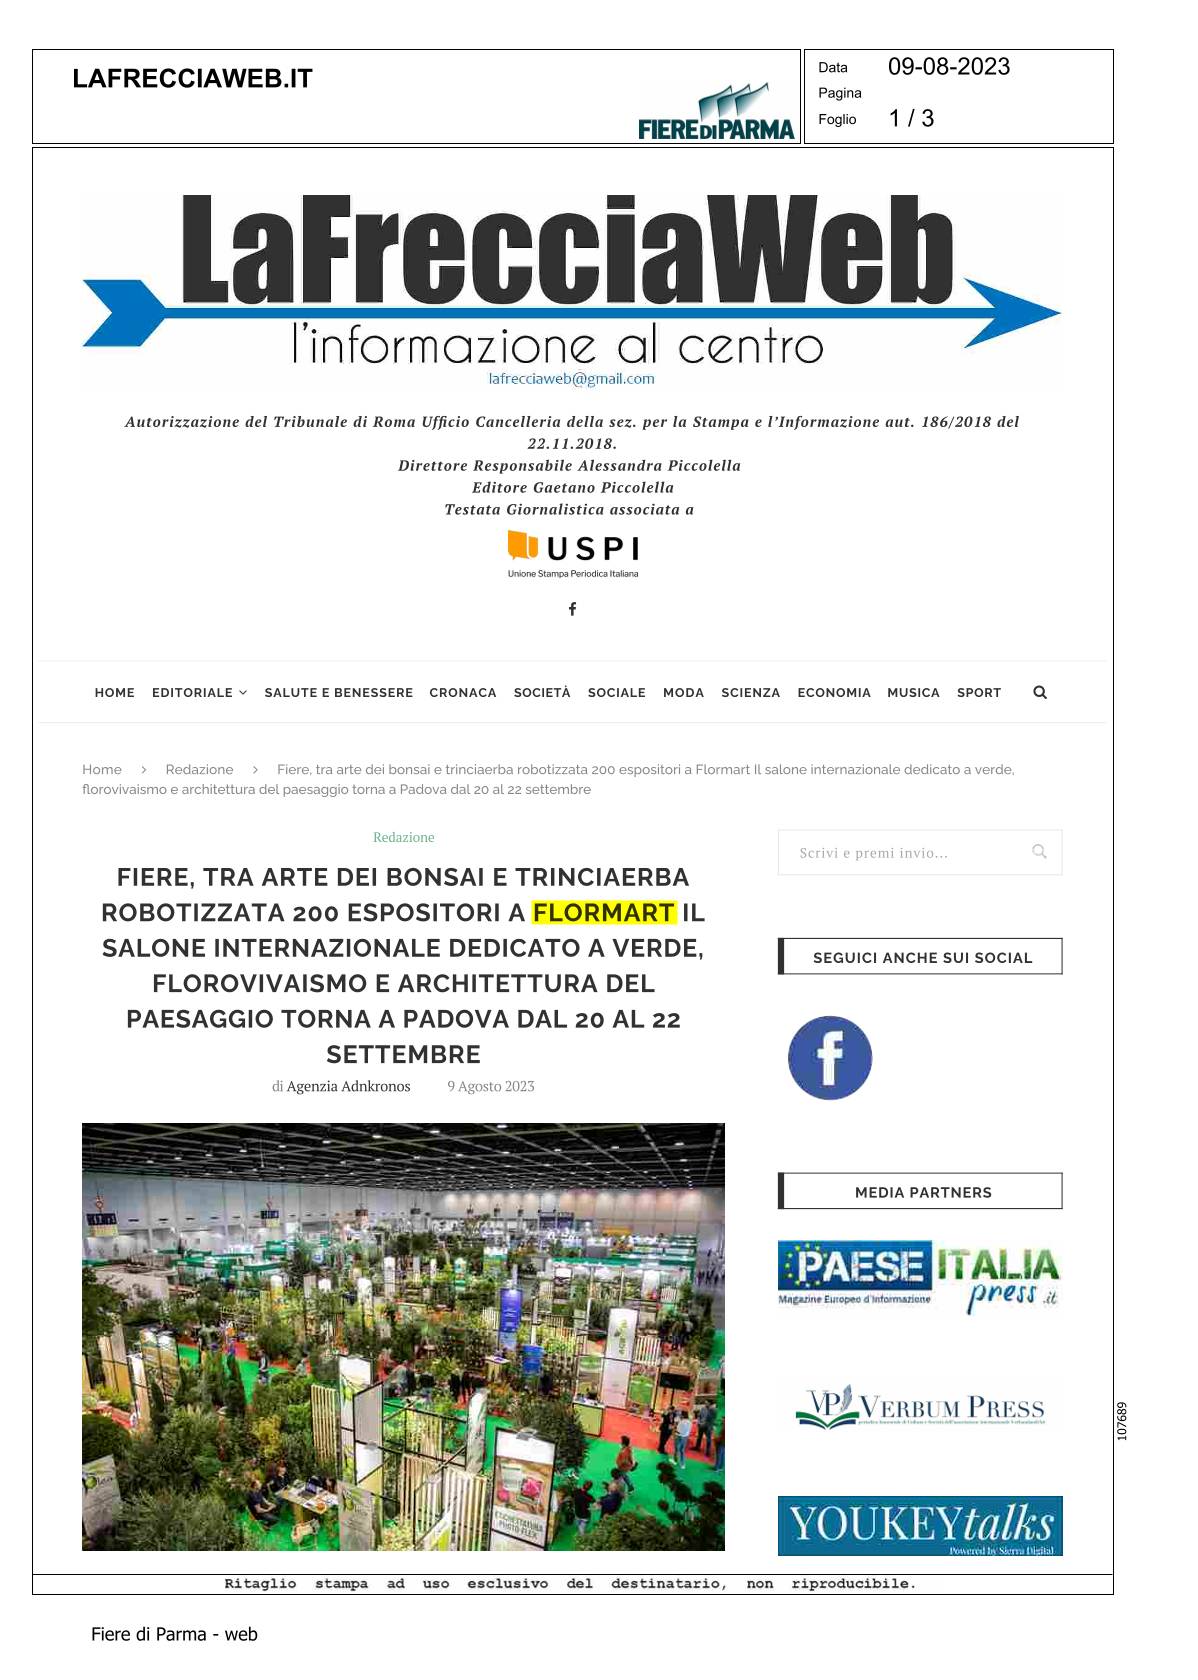 09/08/2023 Lafrecciaweb